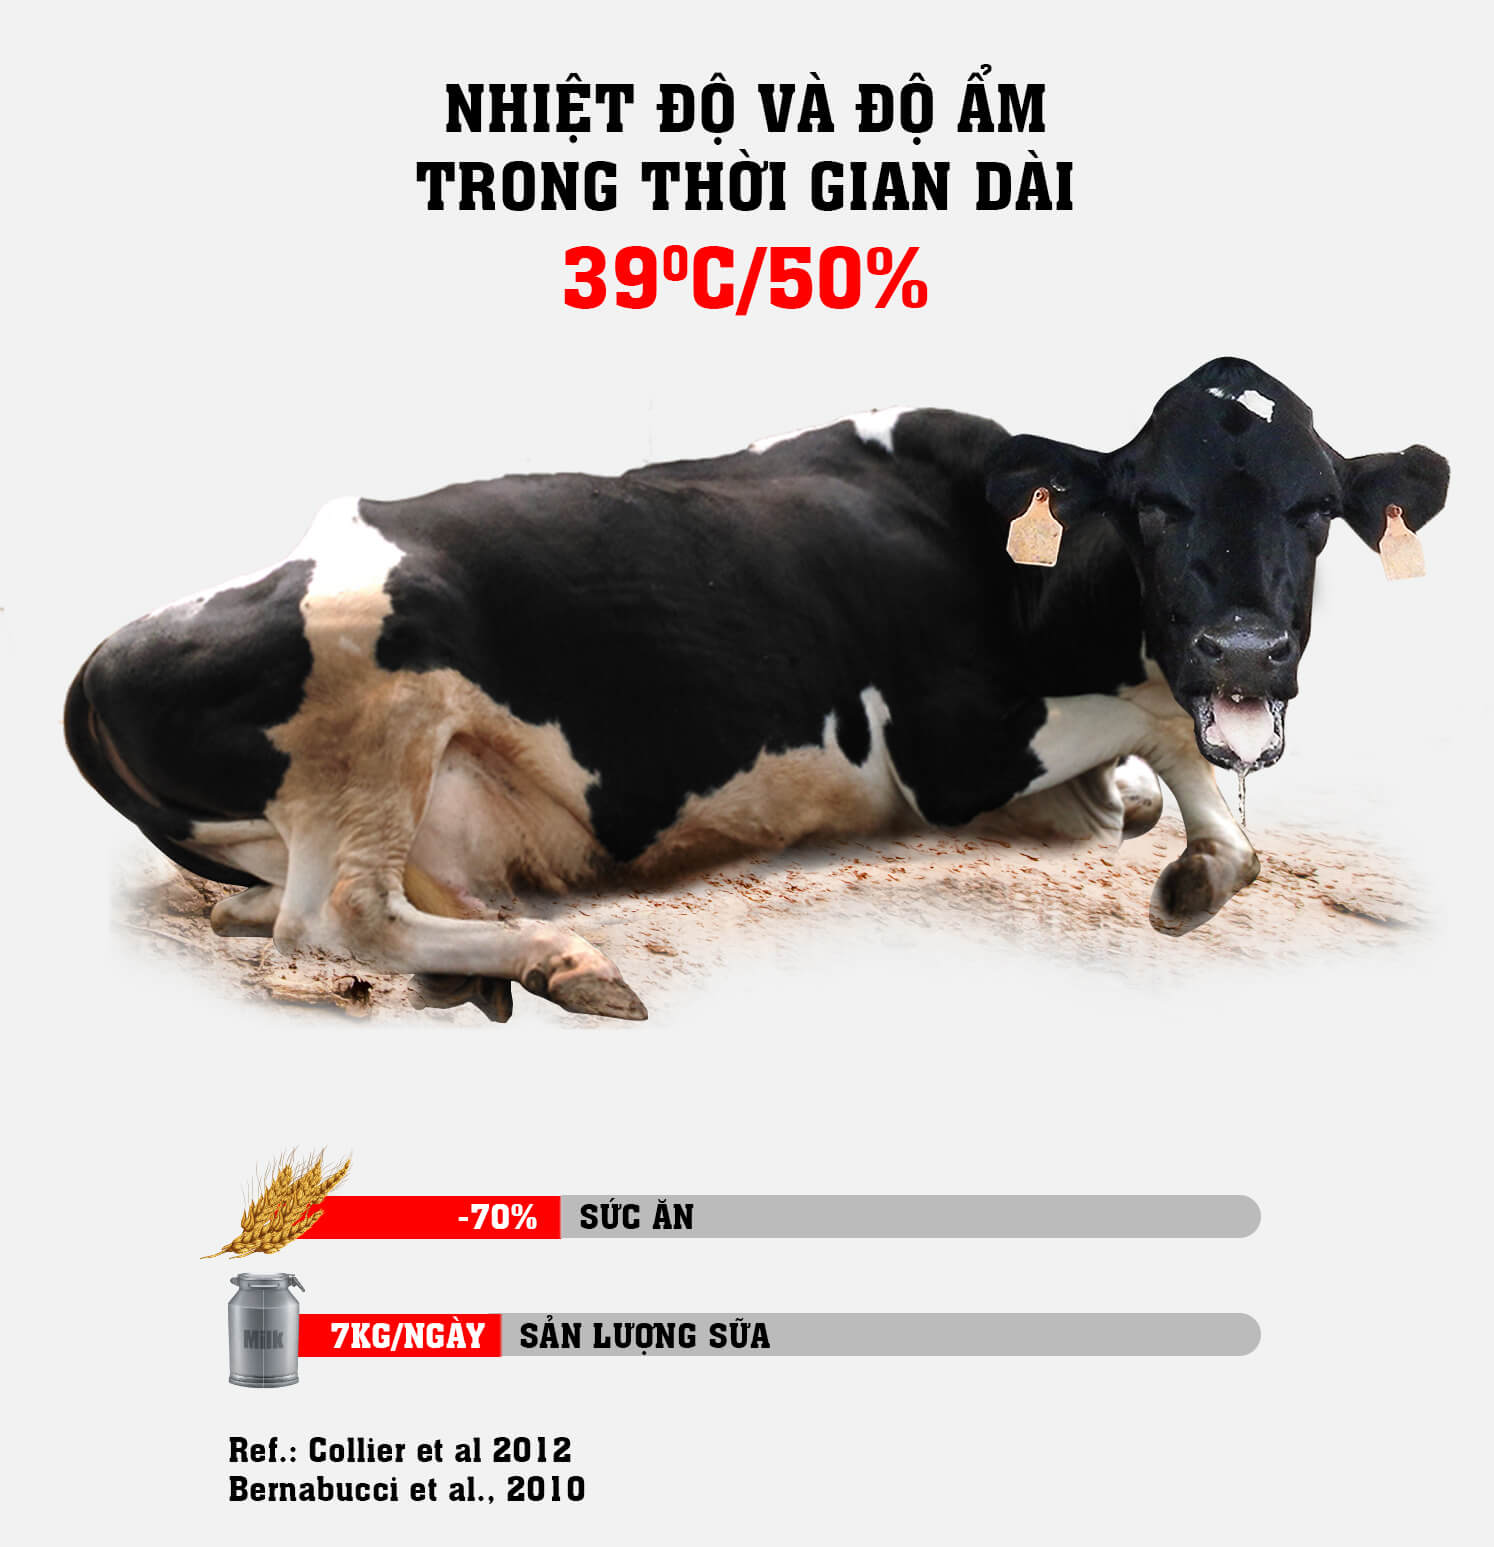 Nhiệt độ trên 39oC liên tục làm giảm sức ăn và sản lượng sữa của bò[4].